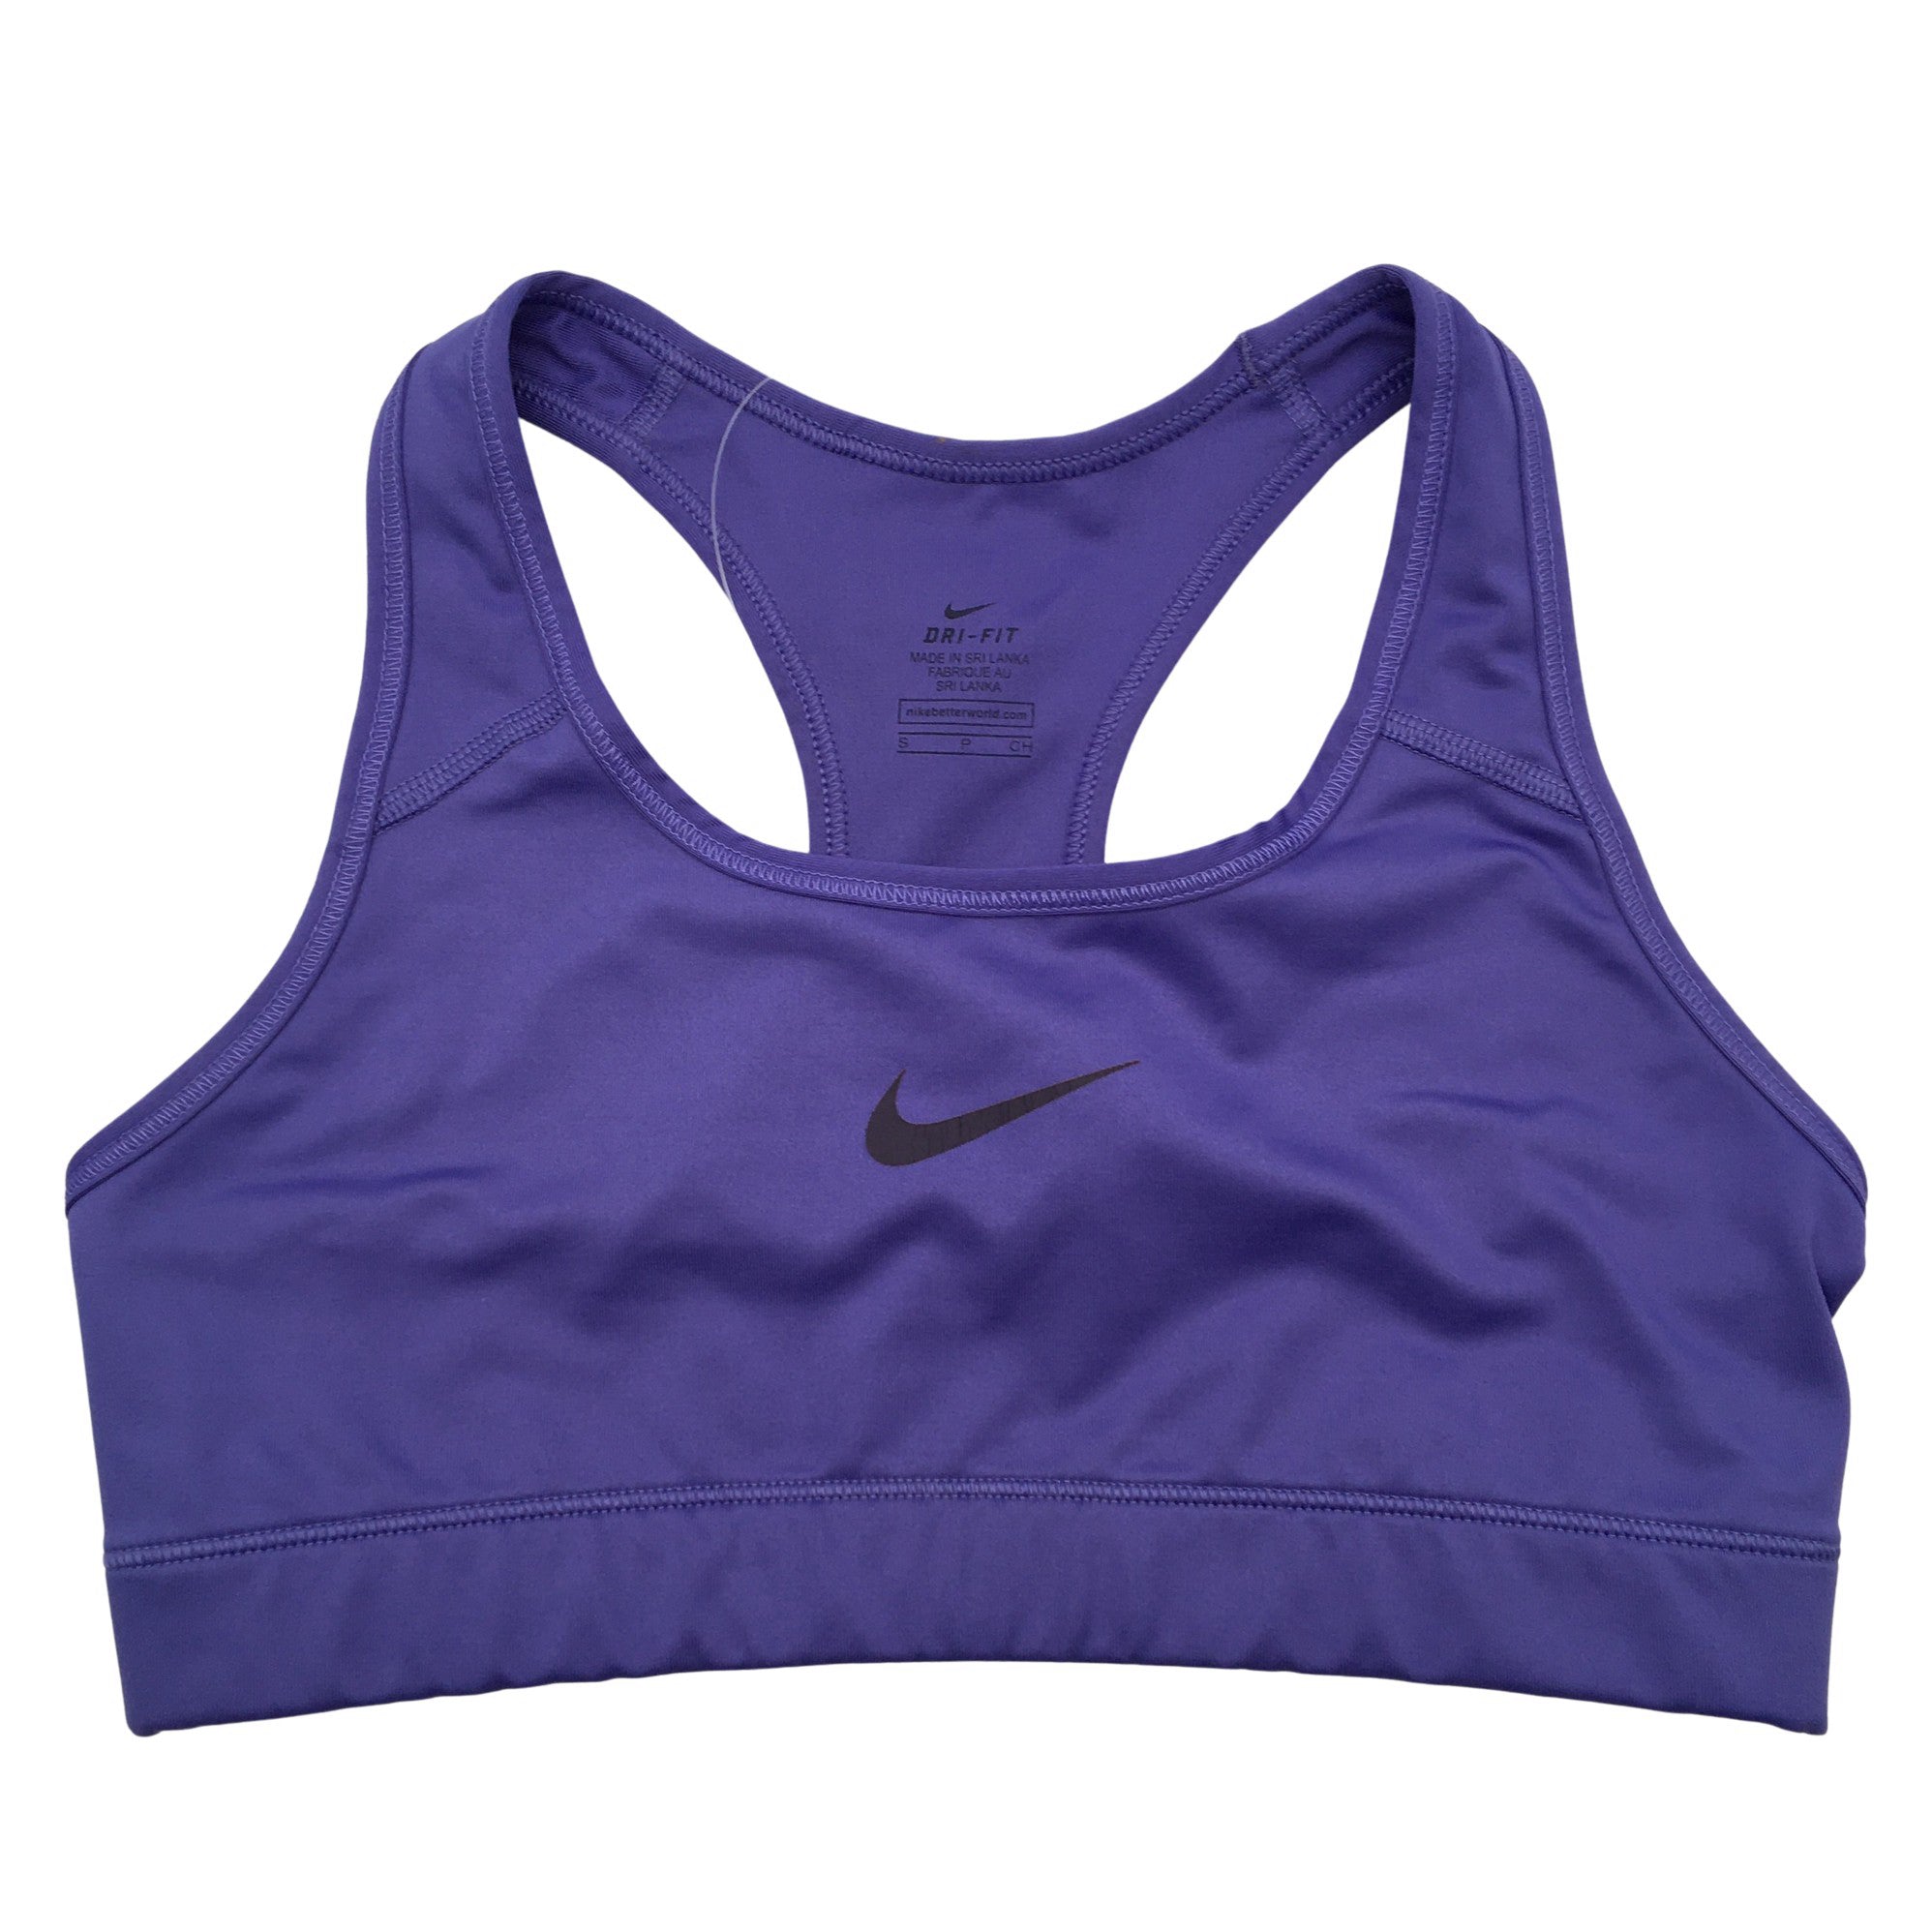 Women's Nike Sports top, size 36 (Purple) | Emmy